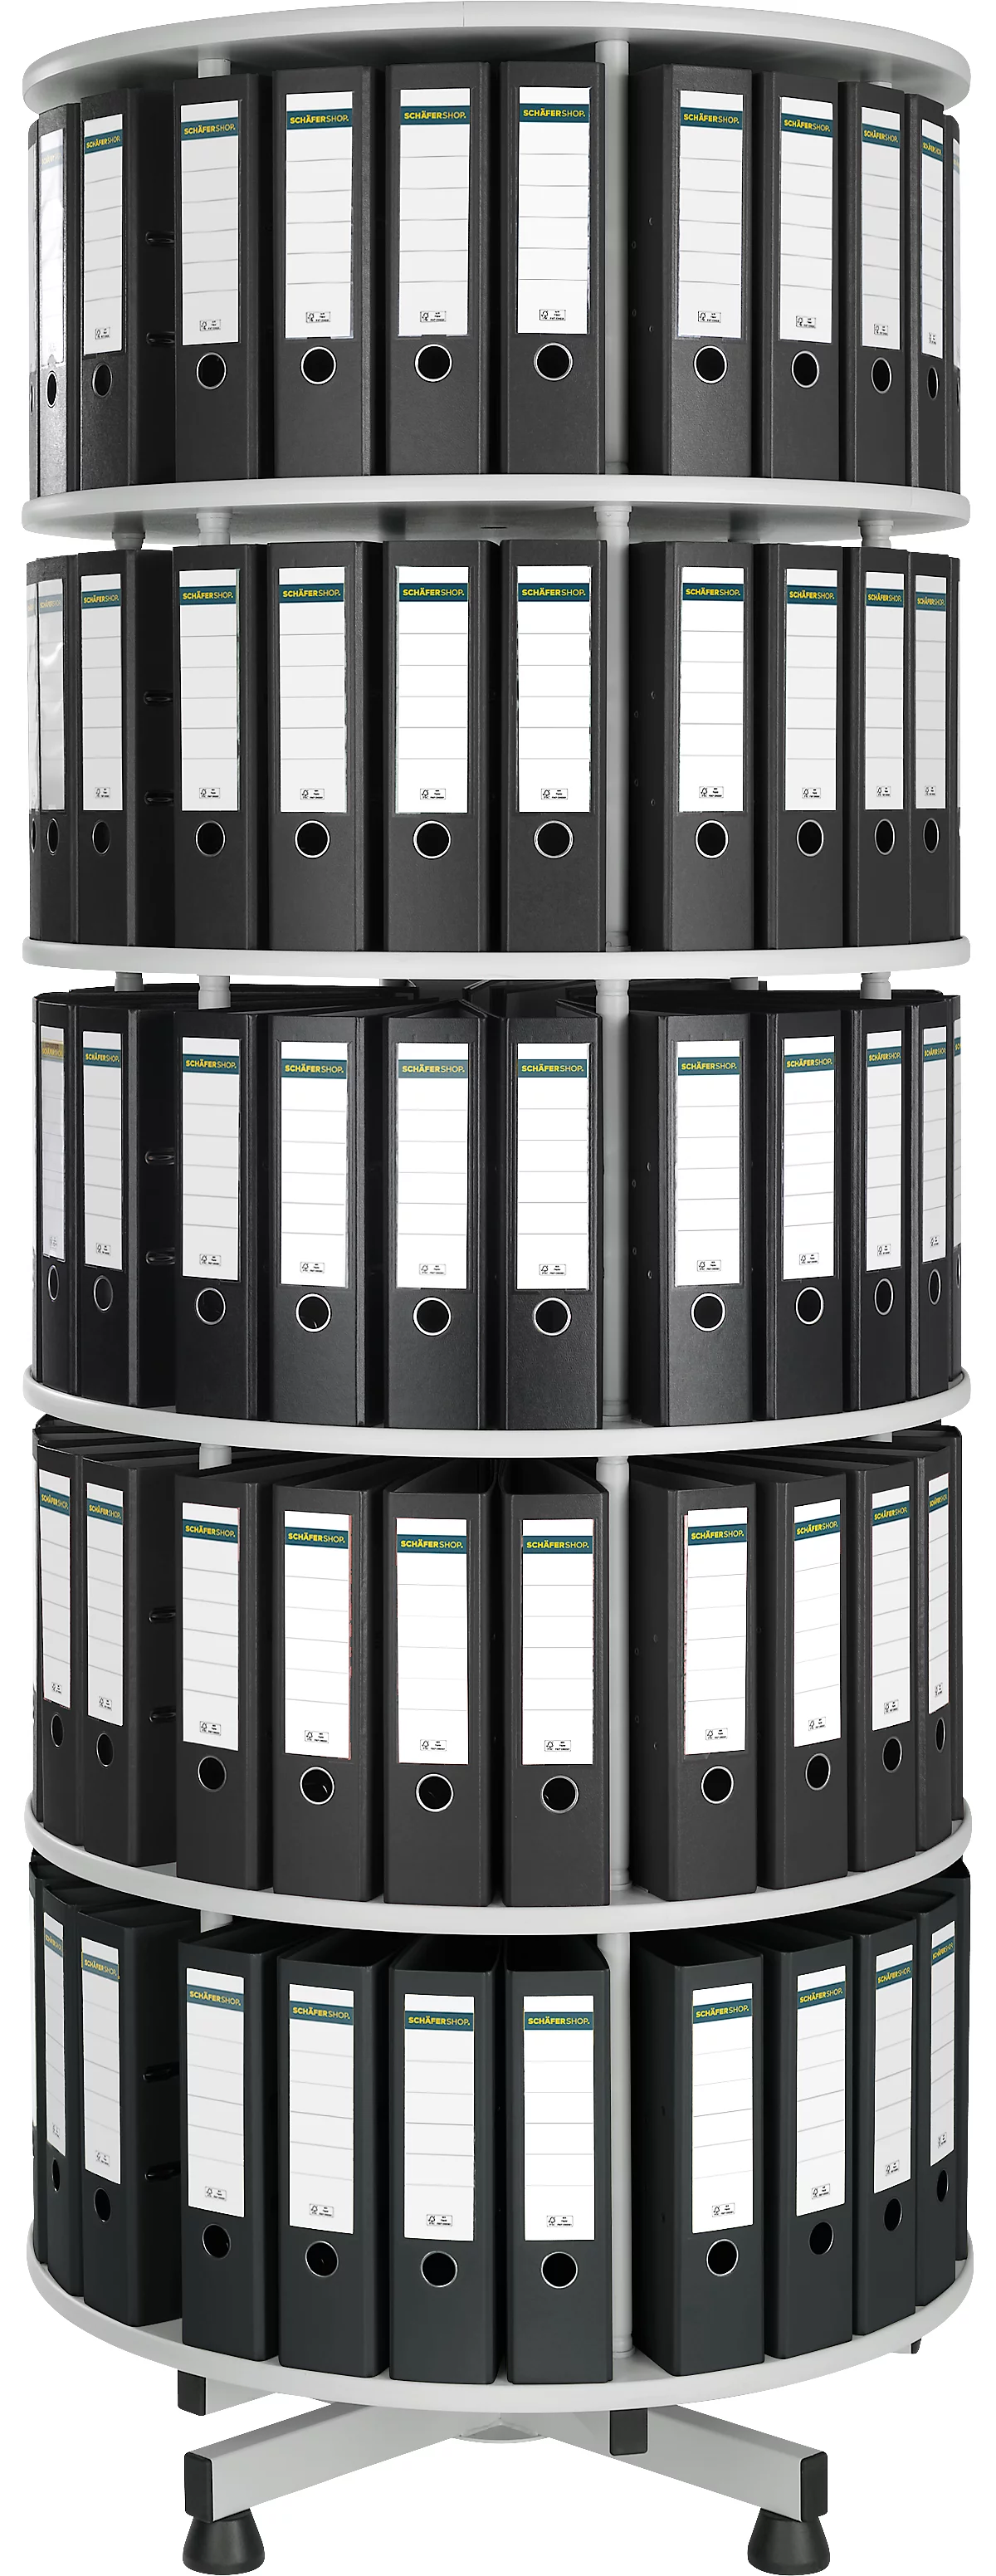 Columna de archivo giratoria de 5 niveles + 40 archivadores de palanca Schäfer Shop Select DIN A4, 80 mm negro GRATIS